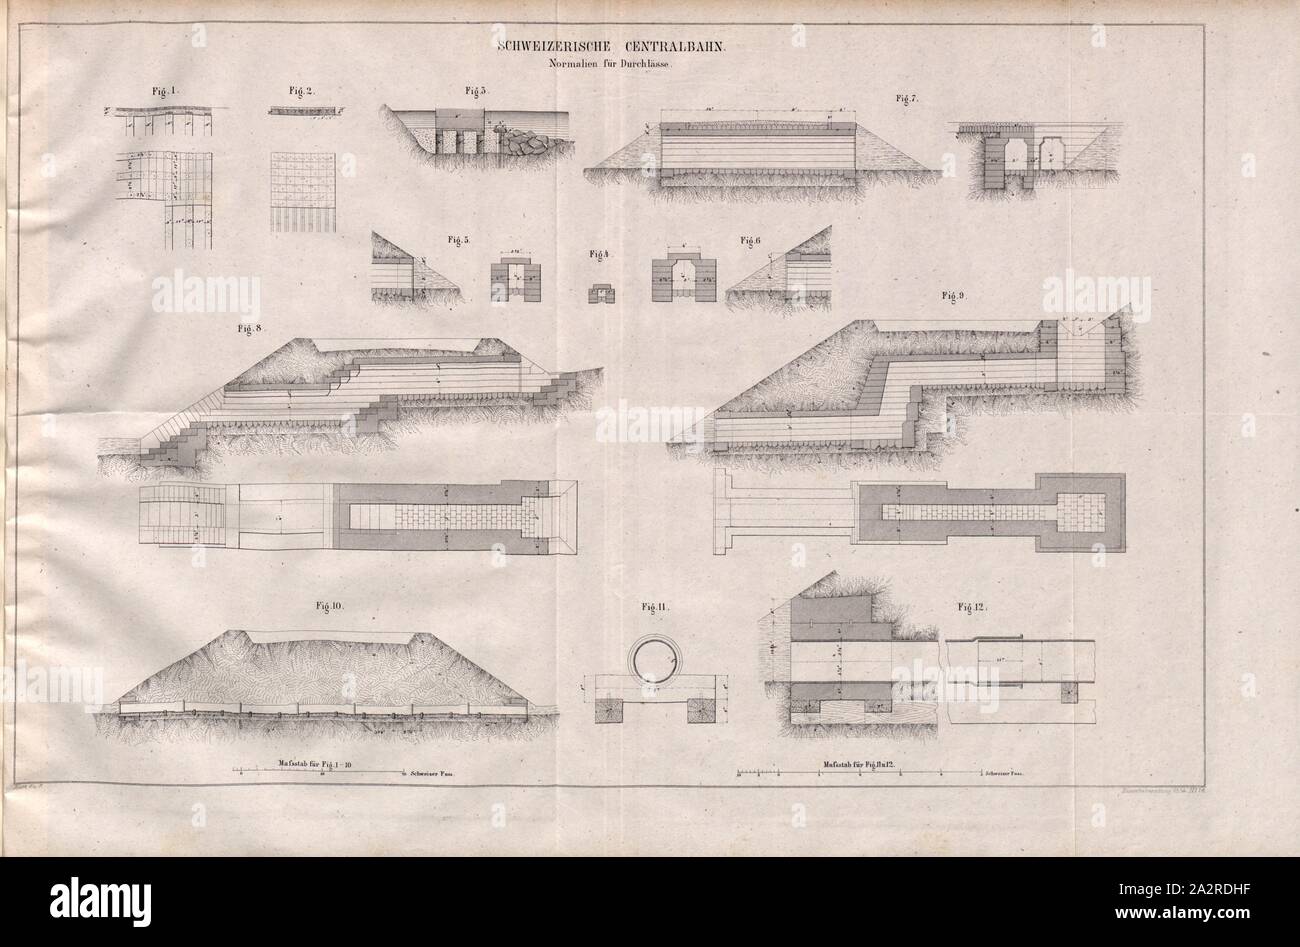 Swiss Central Railway 2, Passage Standards, Figs. 1-12, Sheet 6-7, 1854, Eisenbahnzeitung. Jg. 12/13. Stuttgart, [s.n.], 1858 Stock Photo